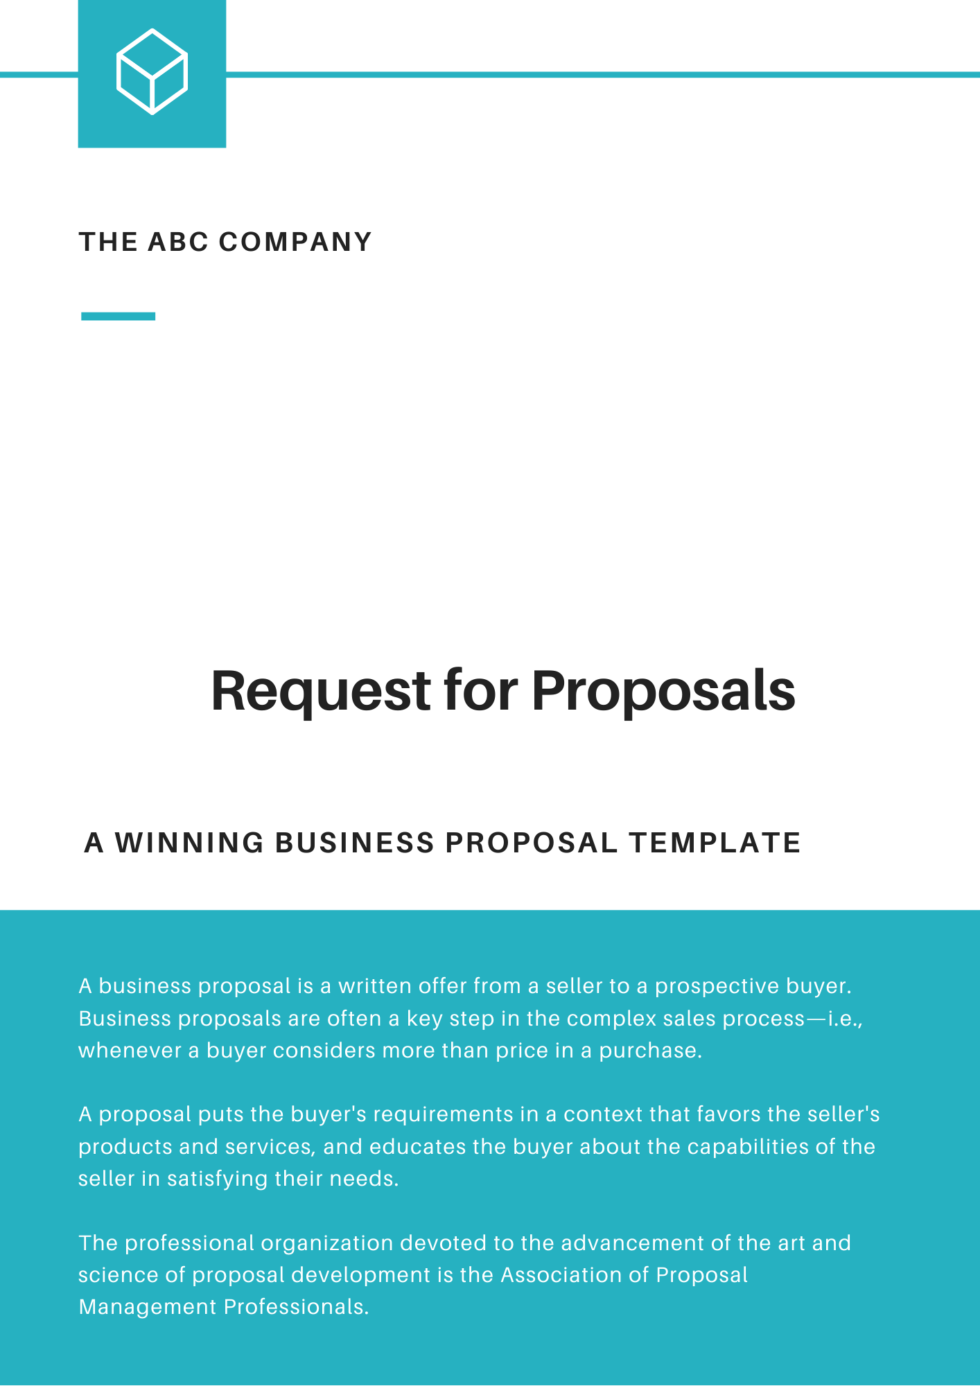 RFP proposal templates